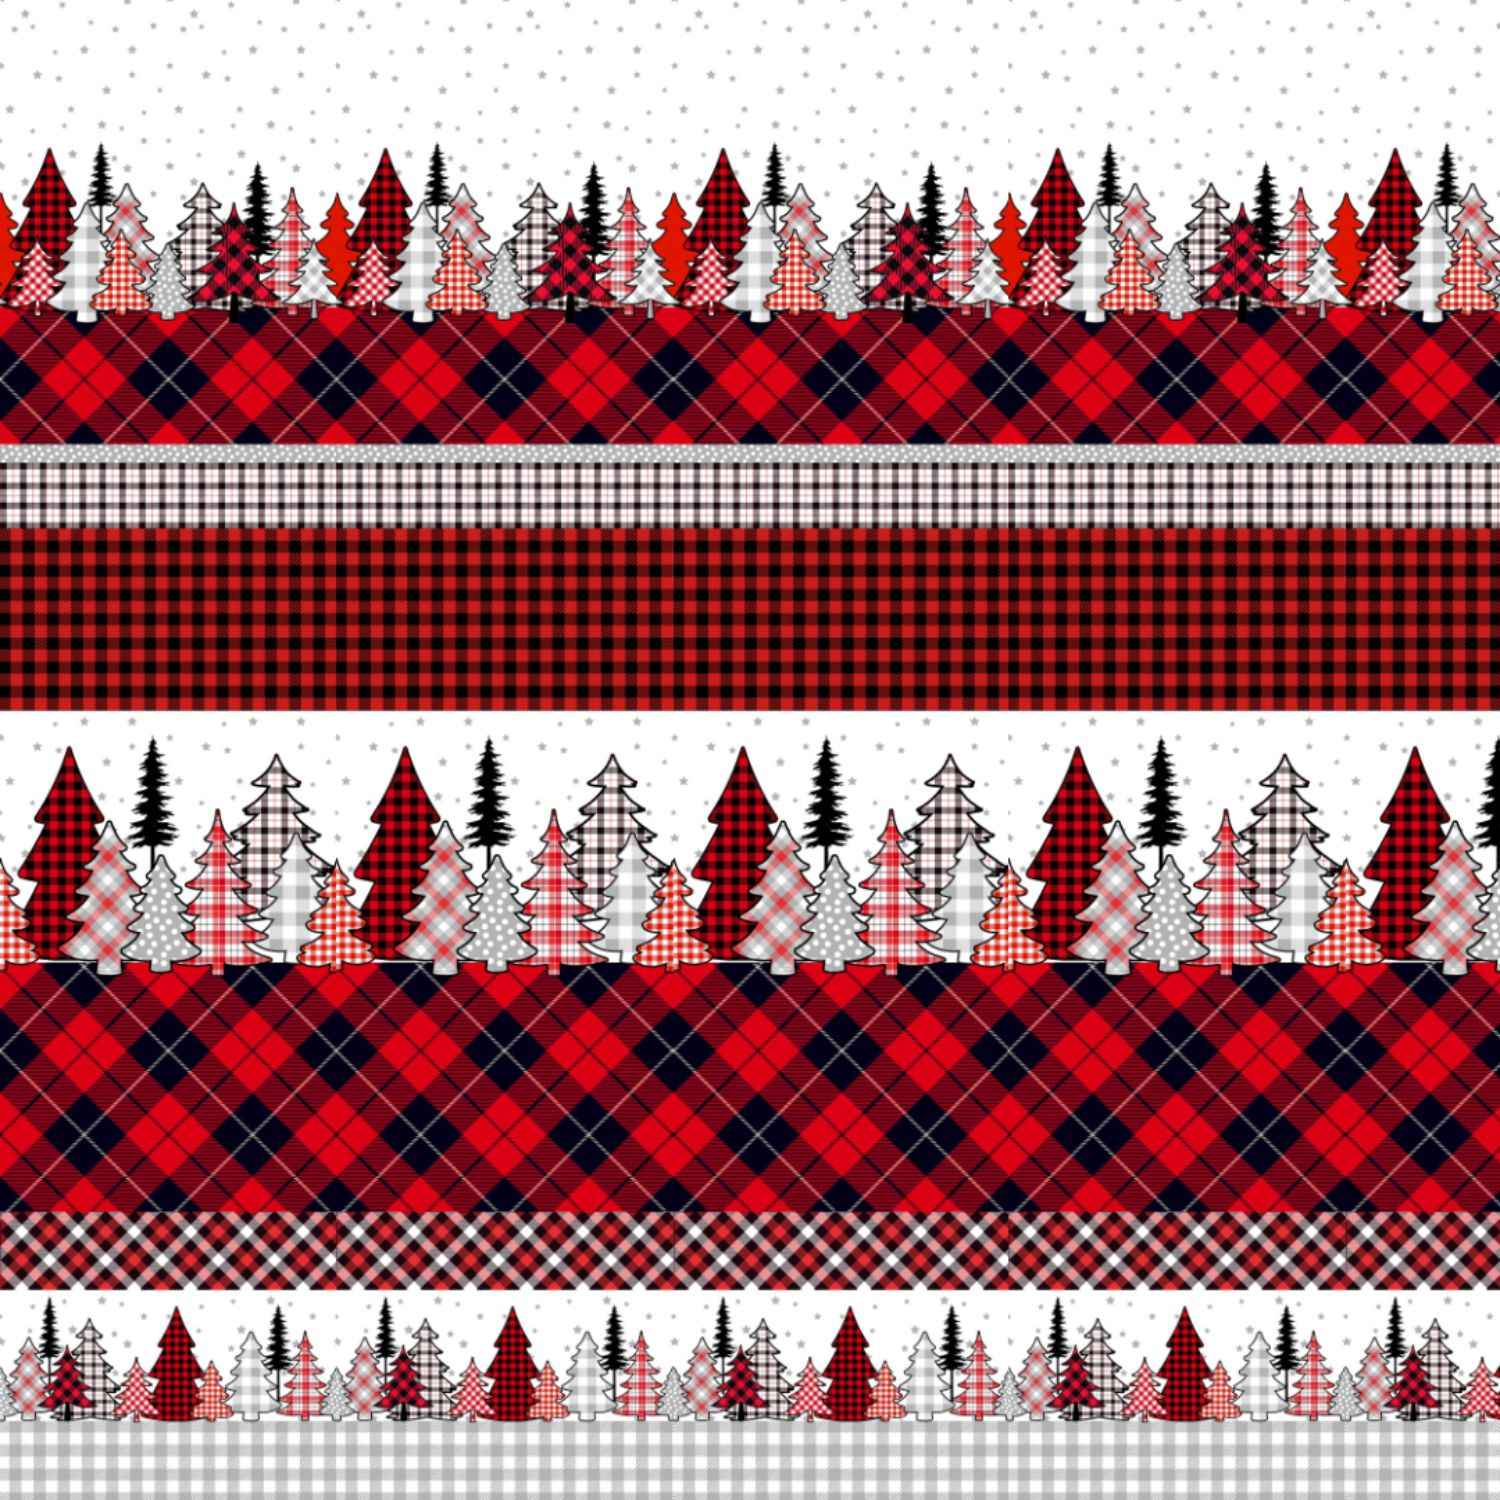 renna-completo-lenzuola-puro-cotone-quadrifoglio-invernale-natalizio-scozzese-renna-abeti-rosso-nero-bianco-pattern